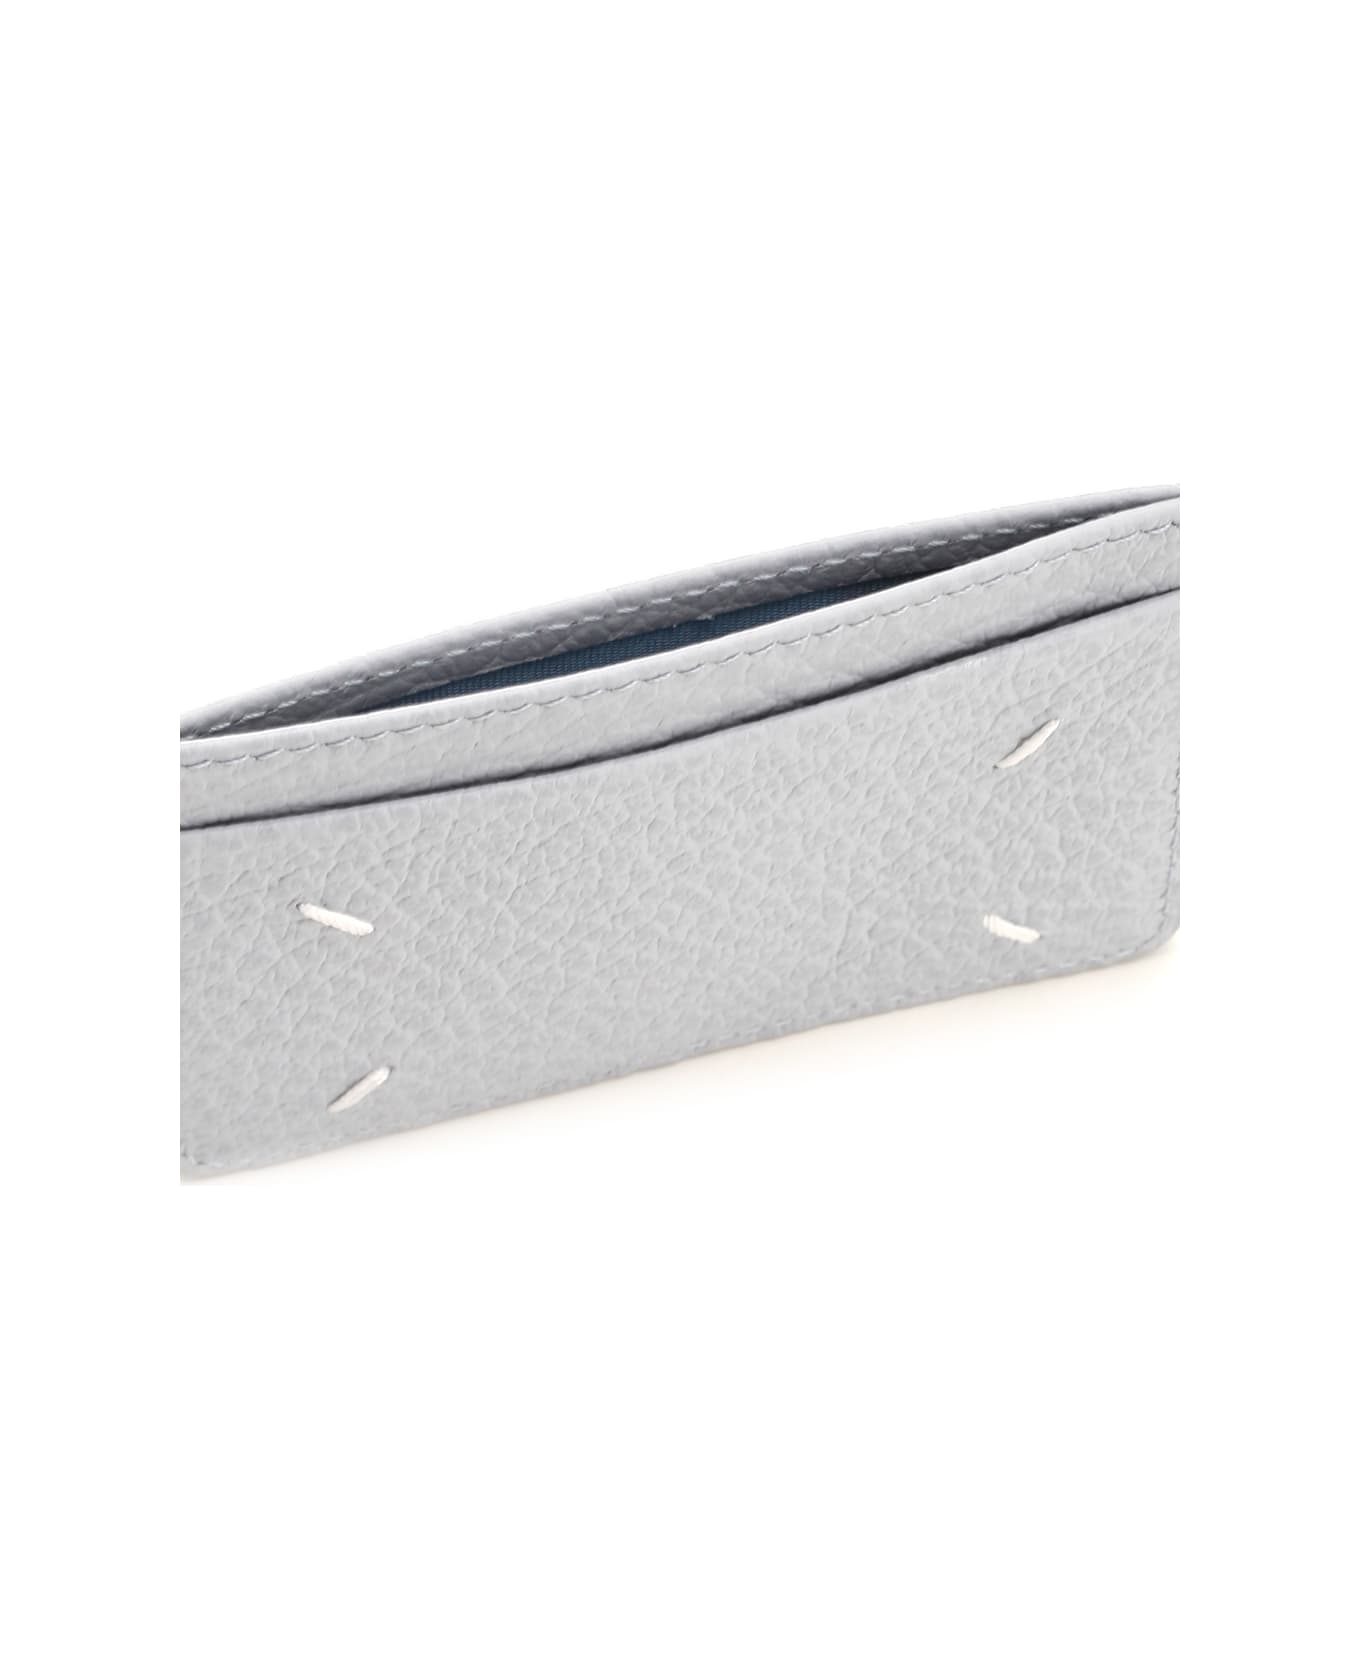 Maison Margiela Leather Card Holder - Gray